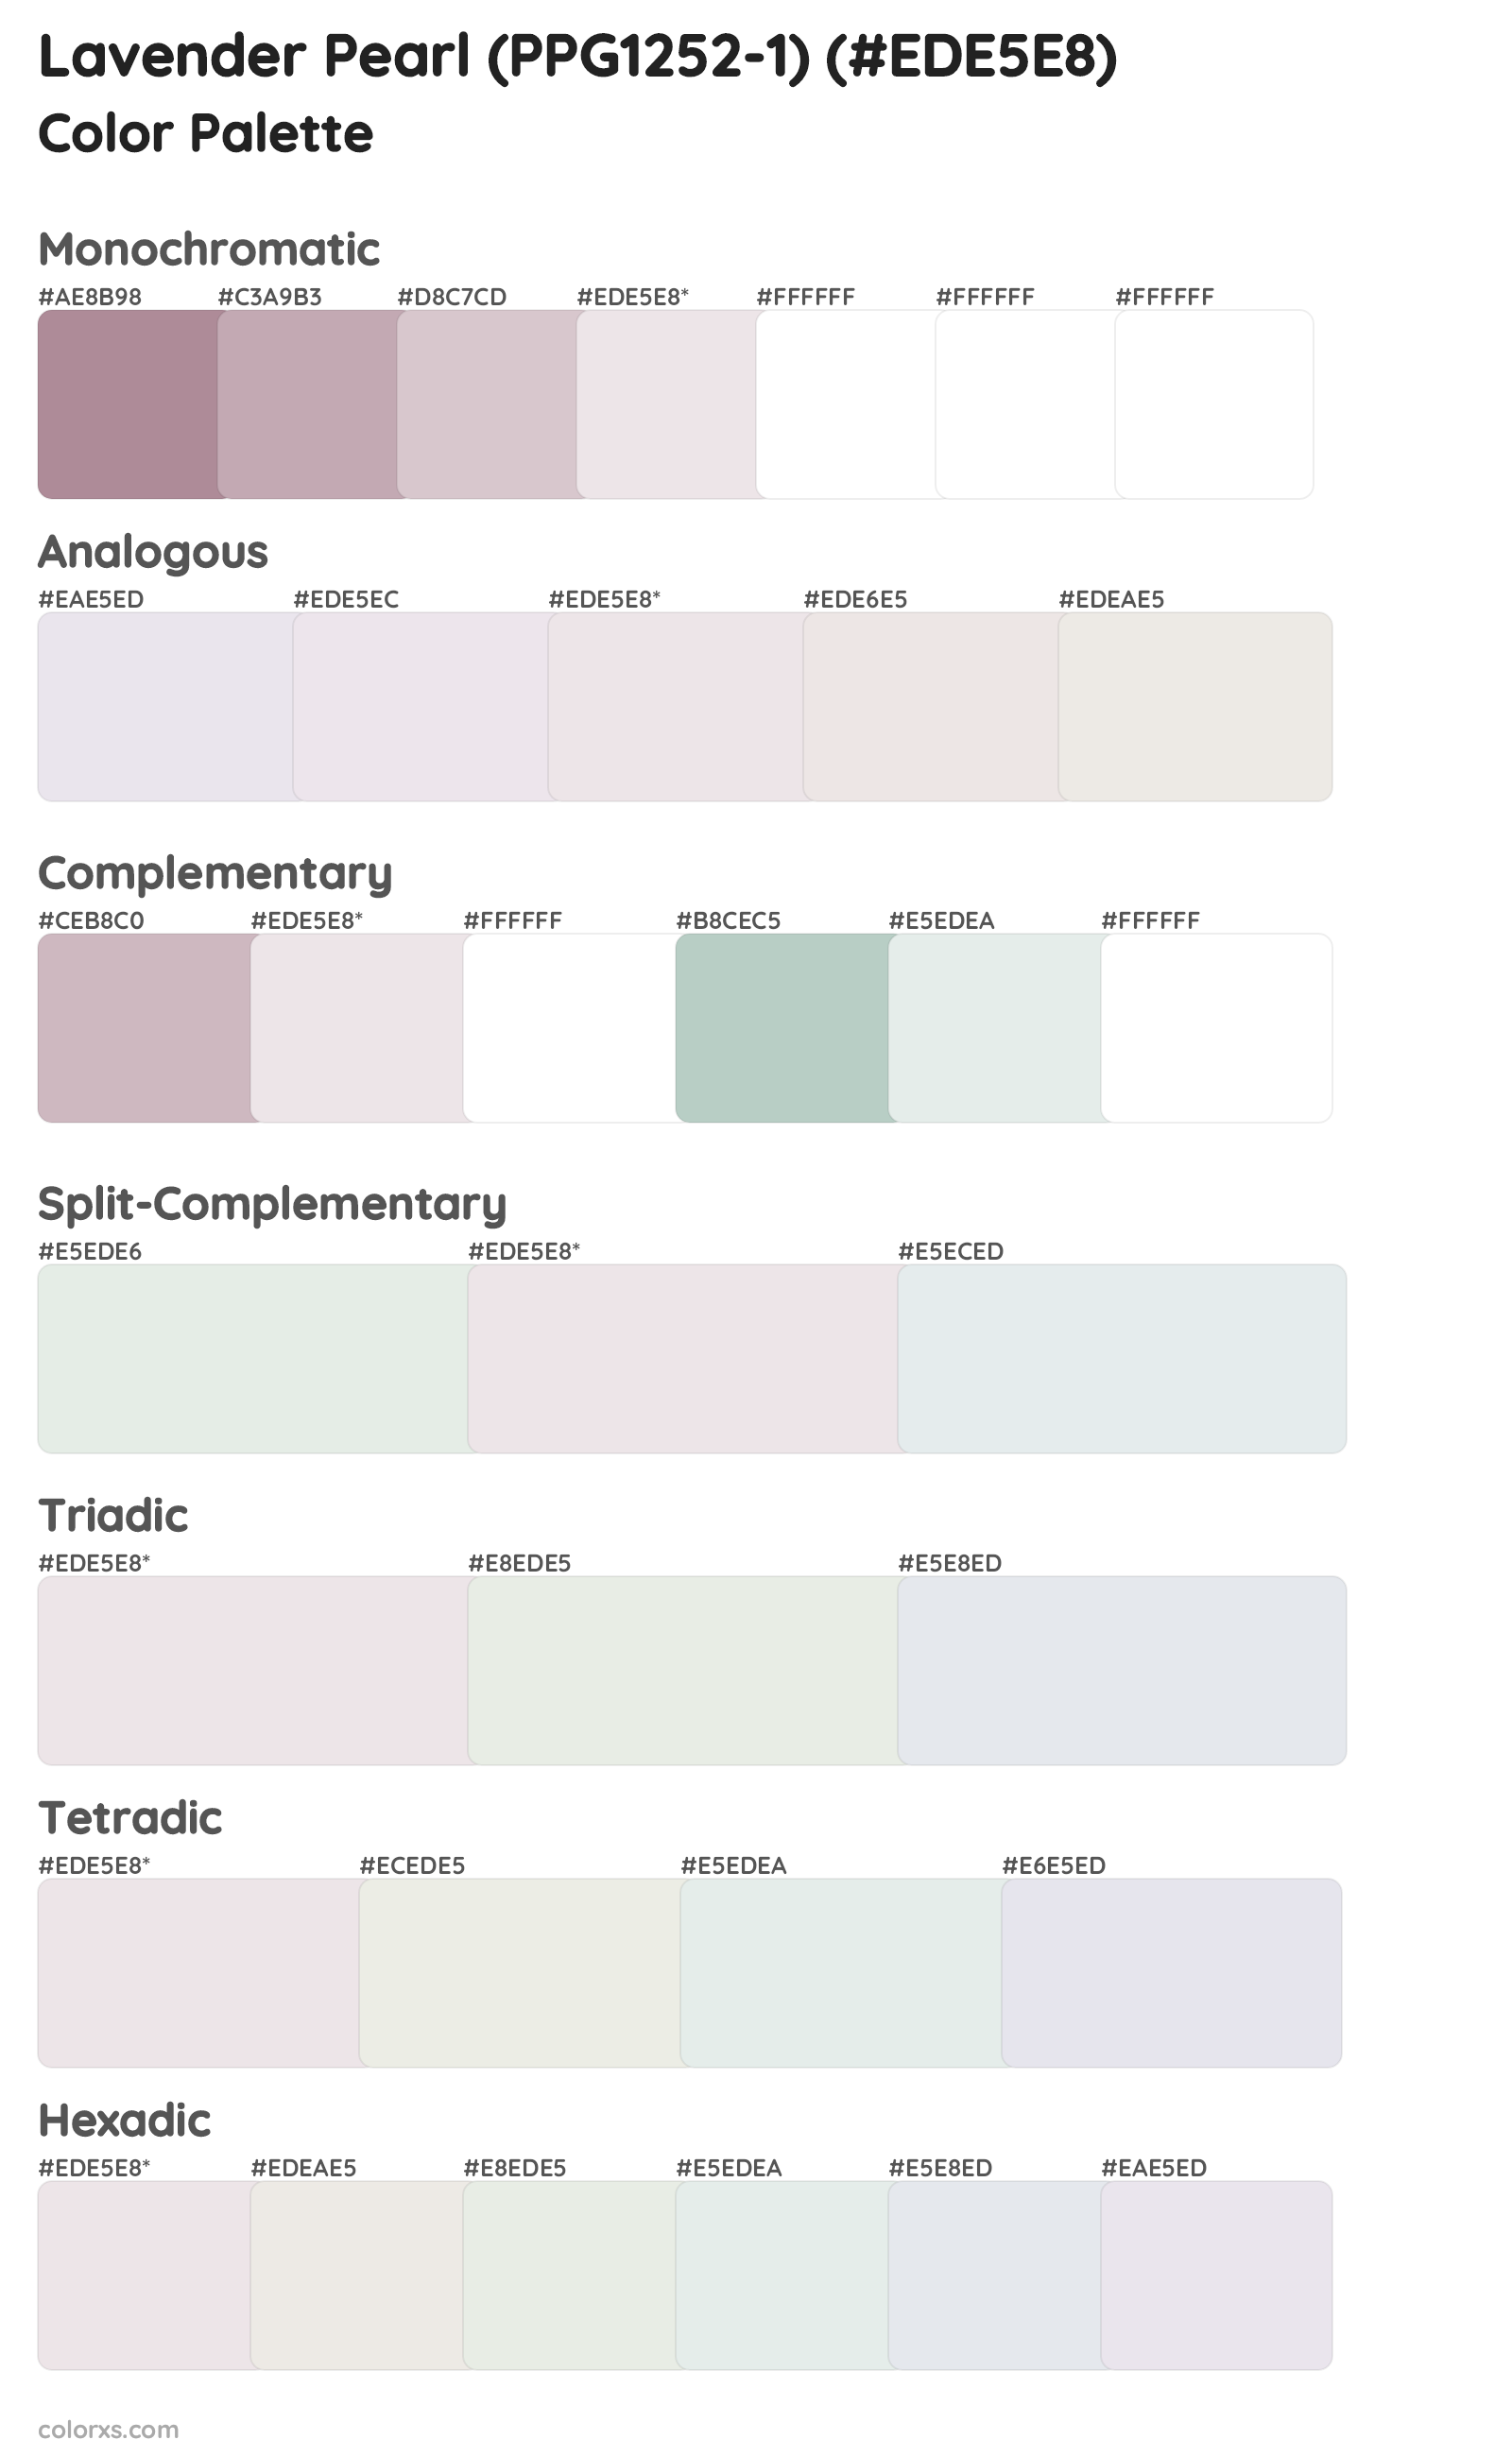 Lavender Pearl (PPG1252-1) Color Scheme Palettes